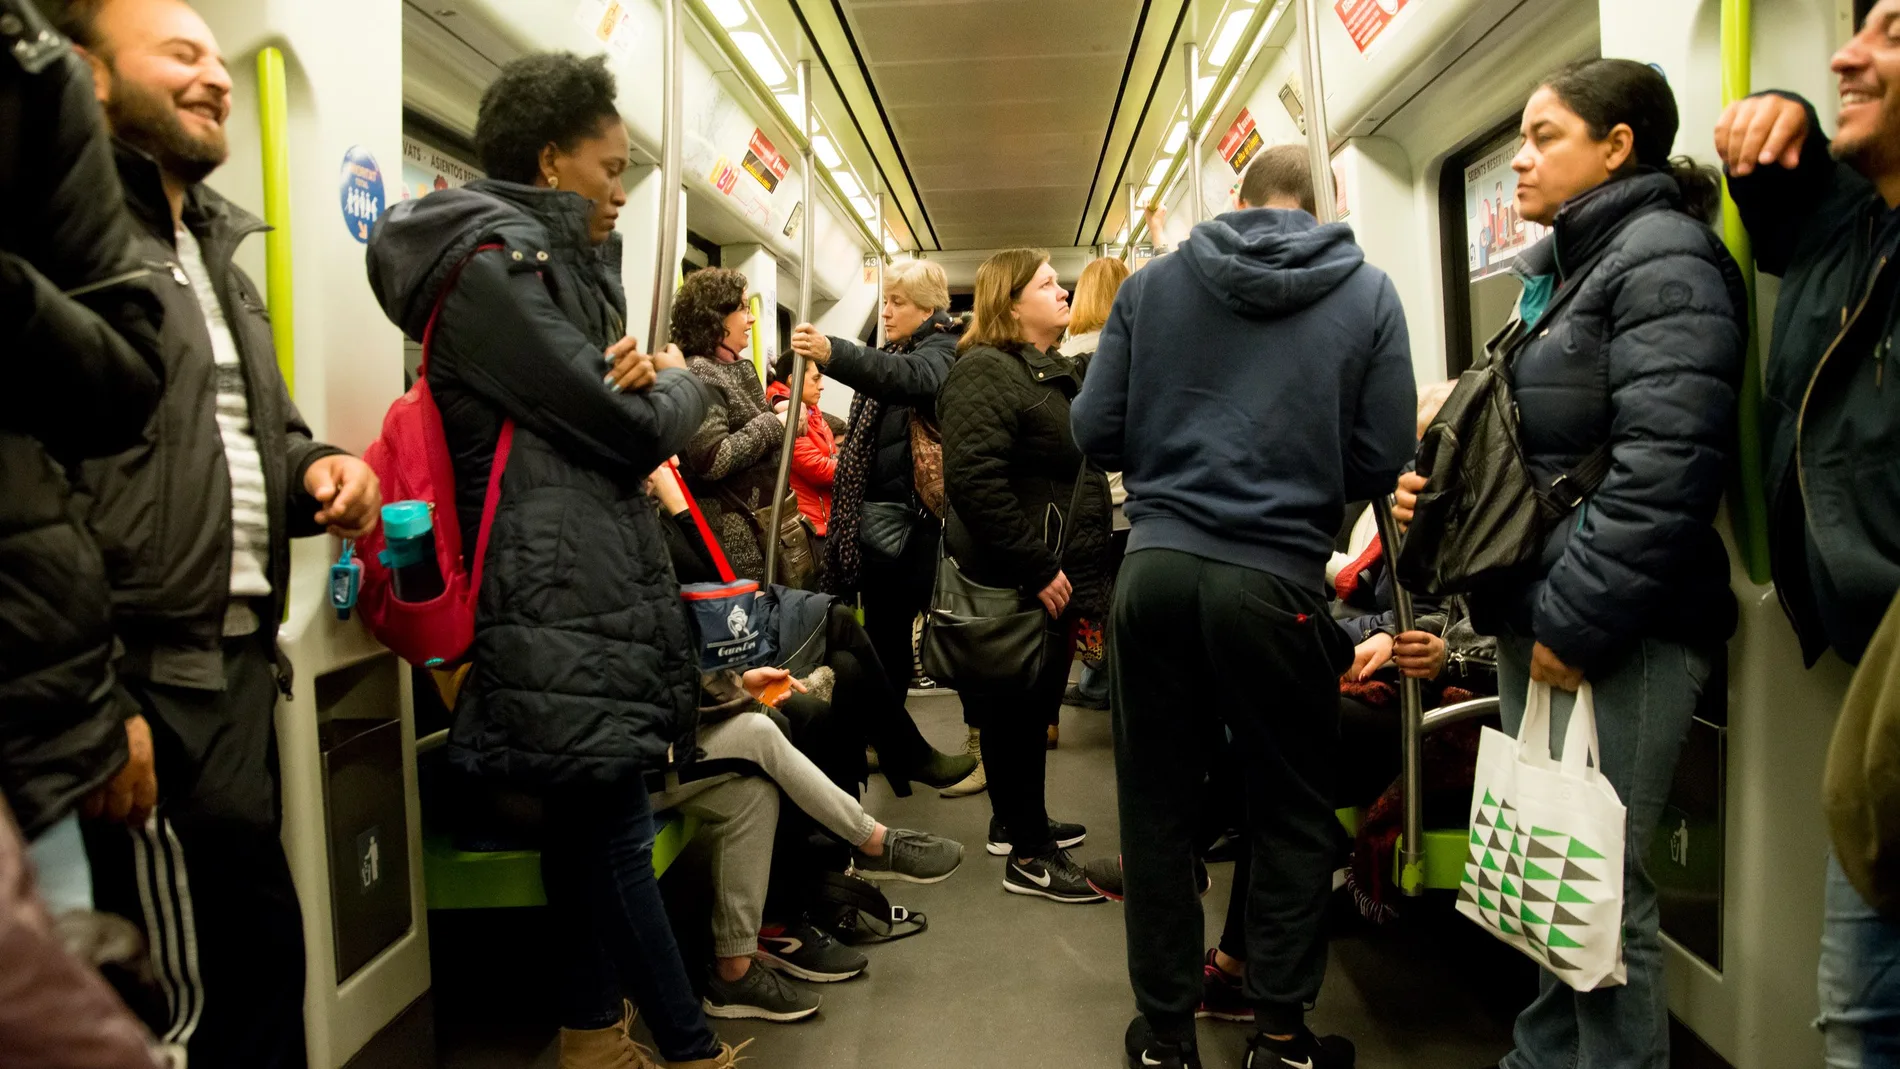 El pánico provocó una estampida en el metro y varios viajeros resultaron heridos. Imagen de archivo